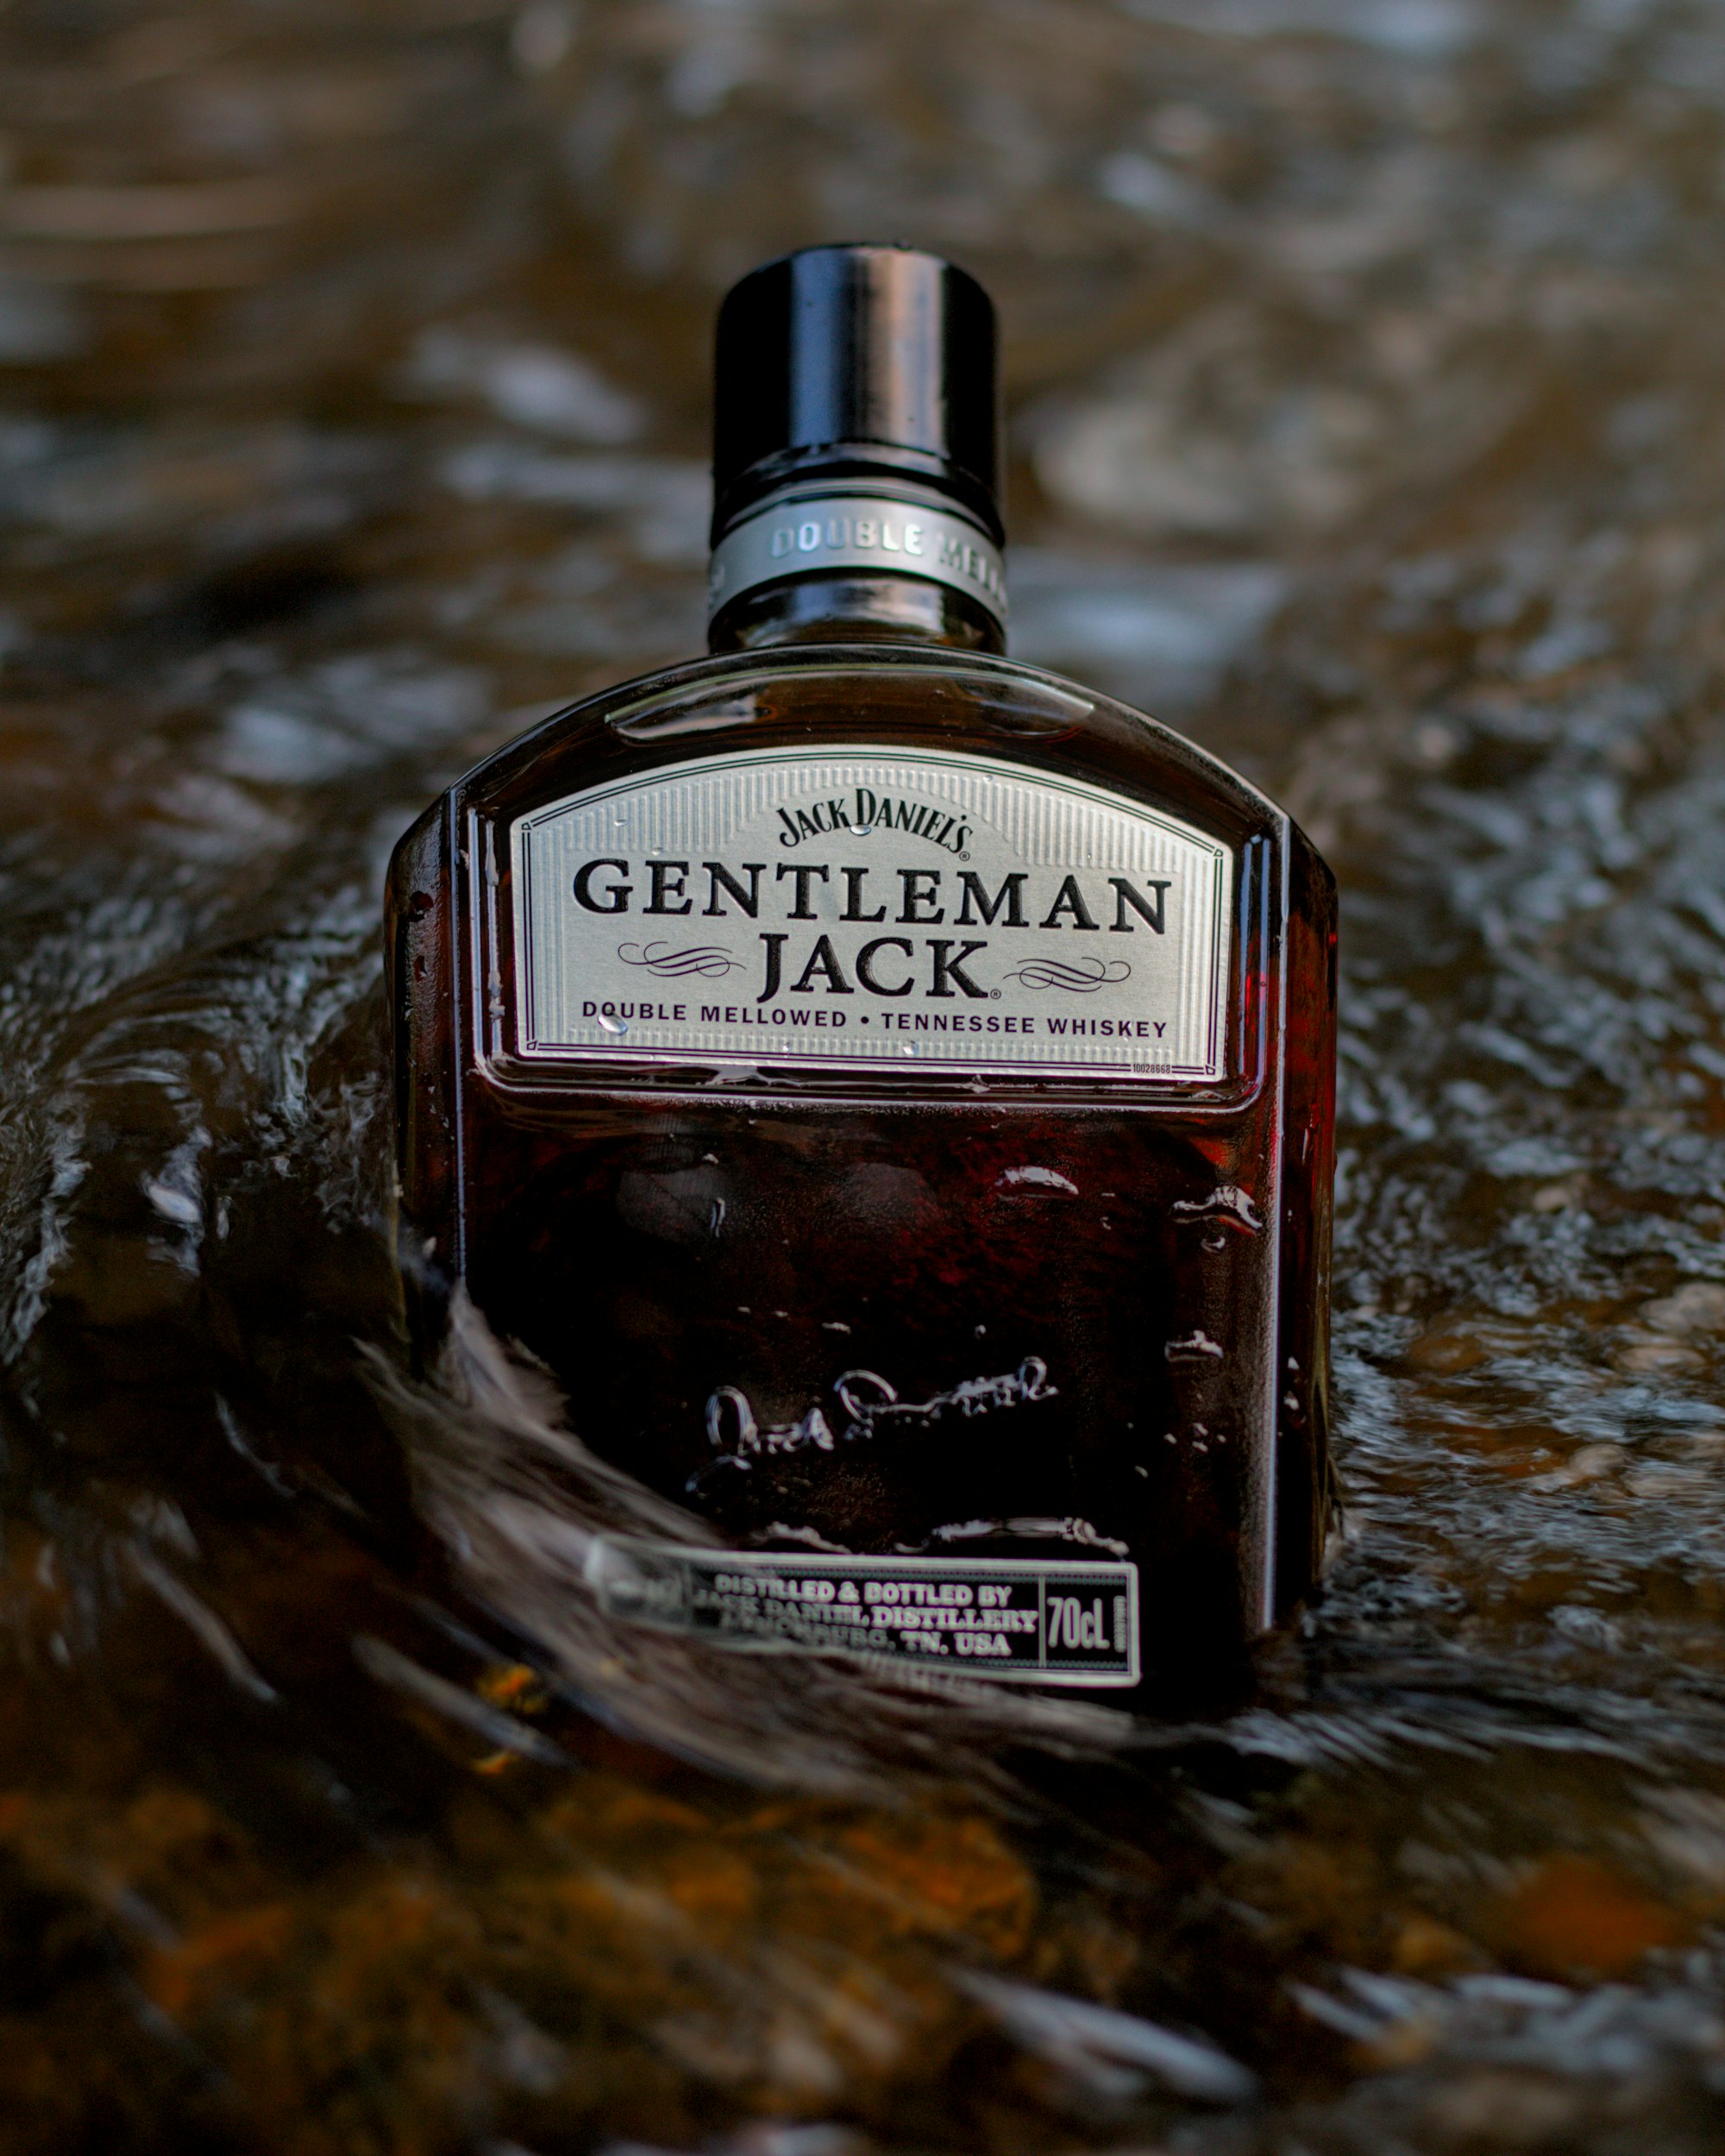 Man is accused of stealing bottles of 'Gentleman Jack'